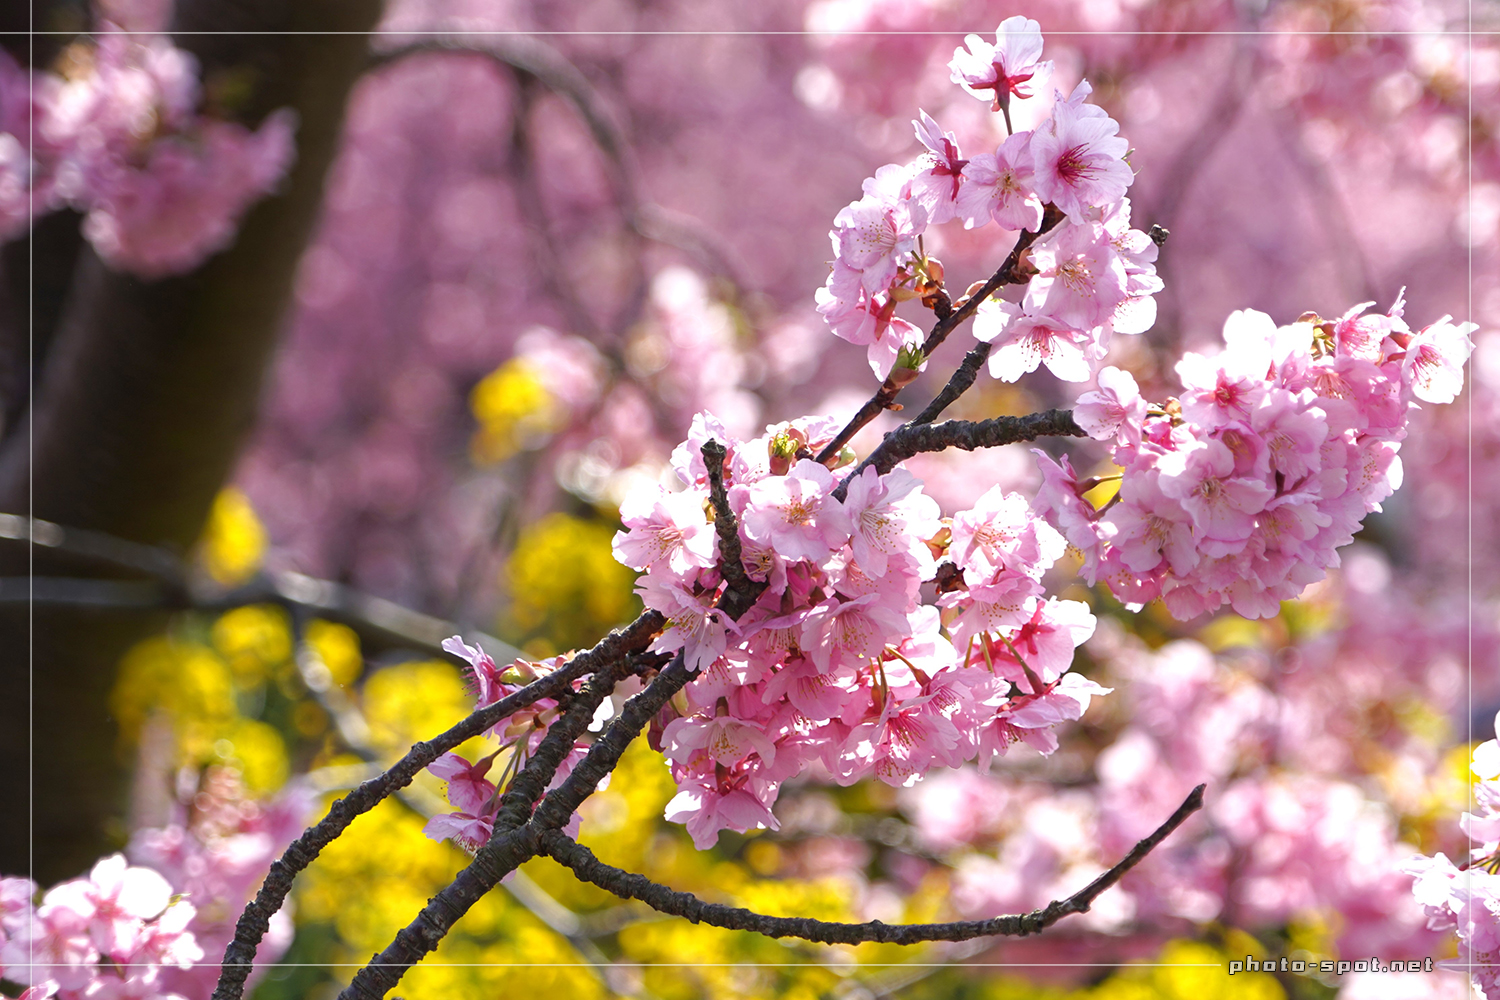 伊豆の河津桜並木と菜の花のコラボ